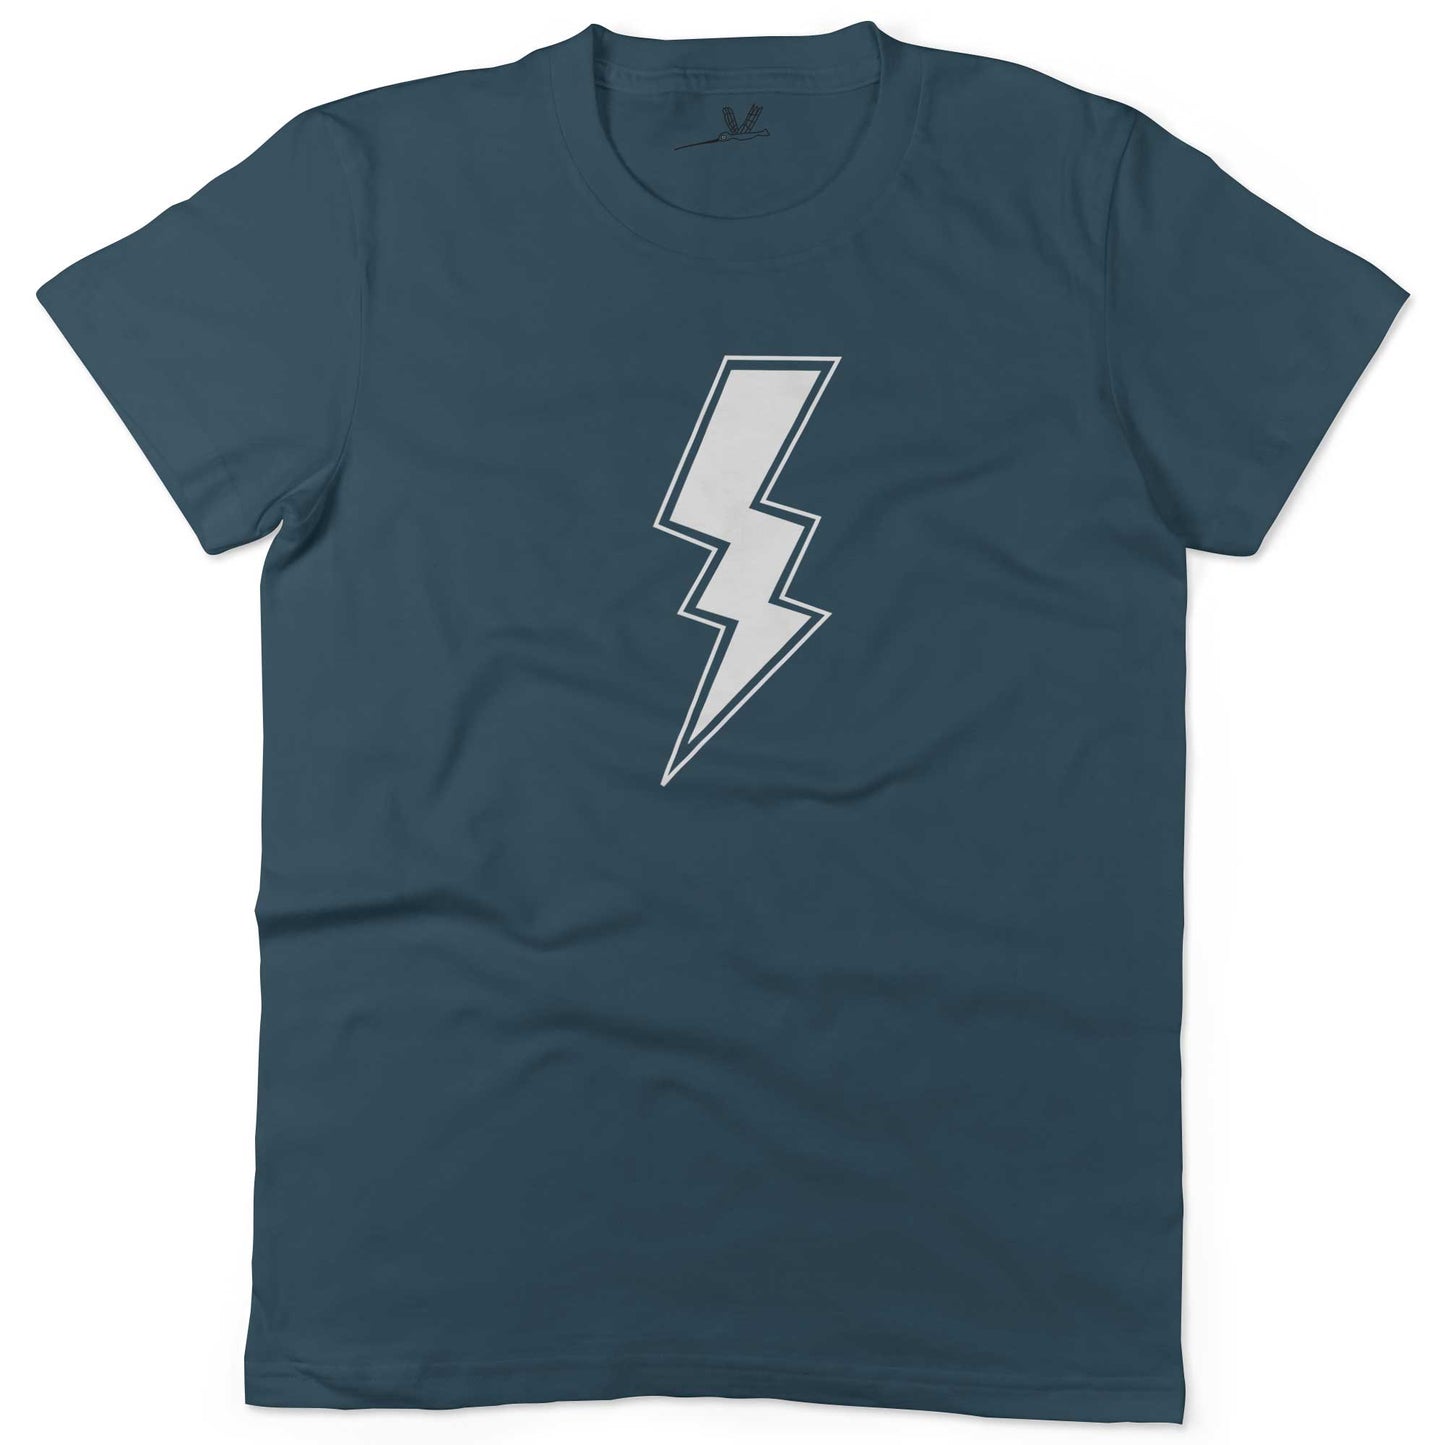 Giant Lightning Bolt Unisex Or Women's Cotton T-shirt-